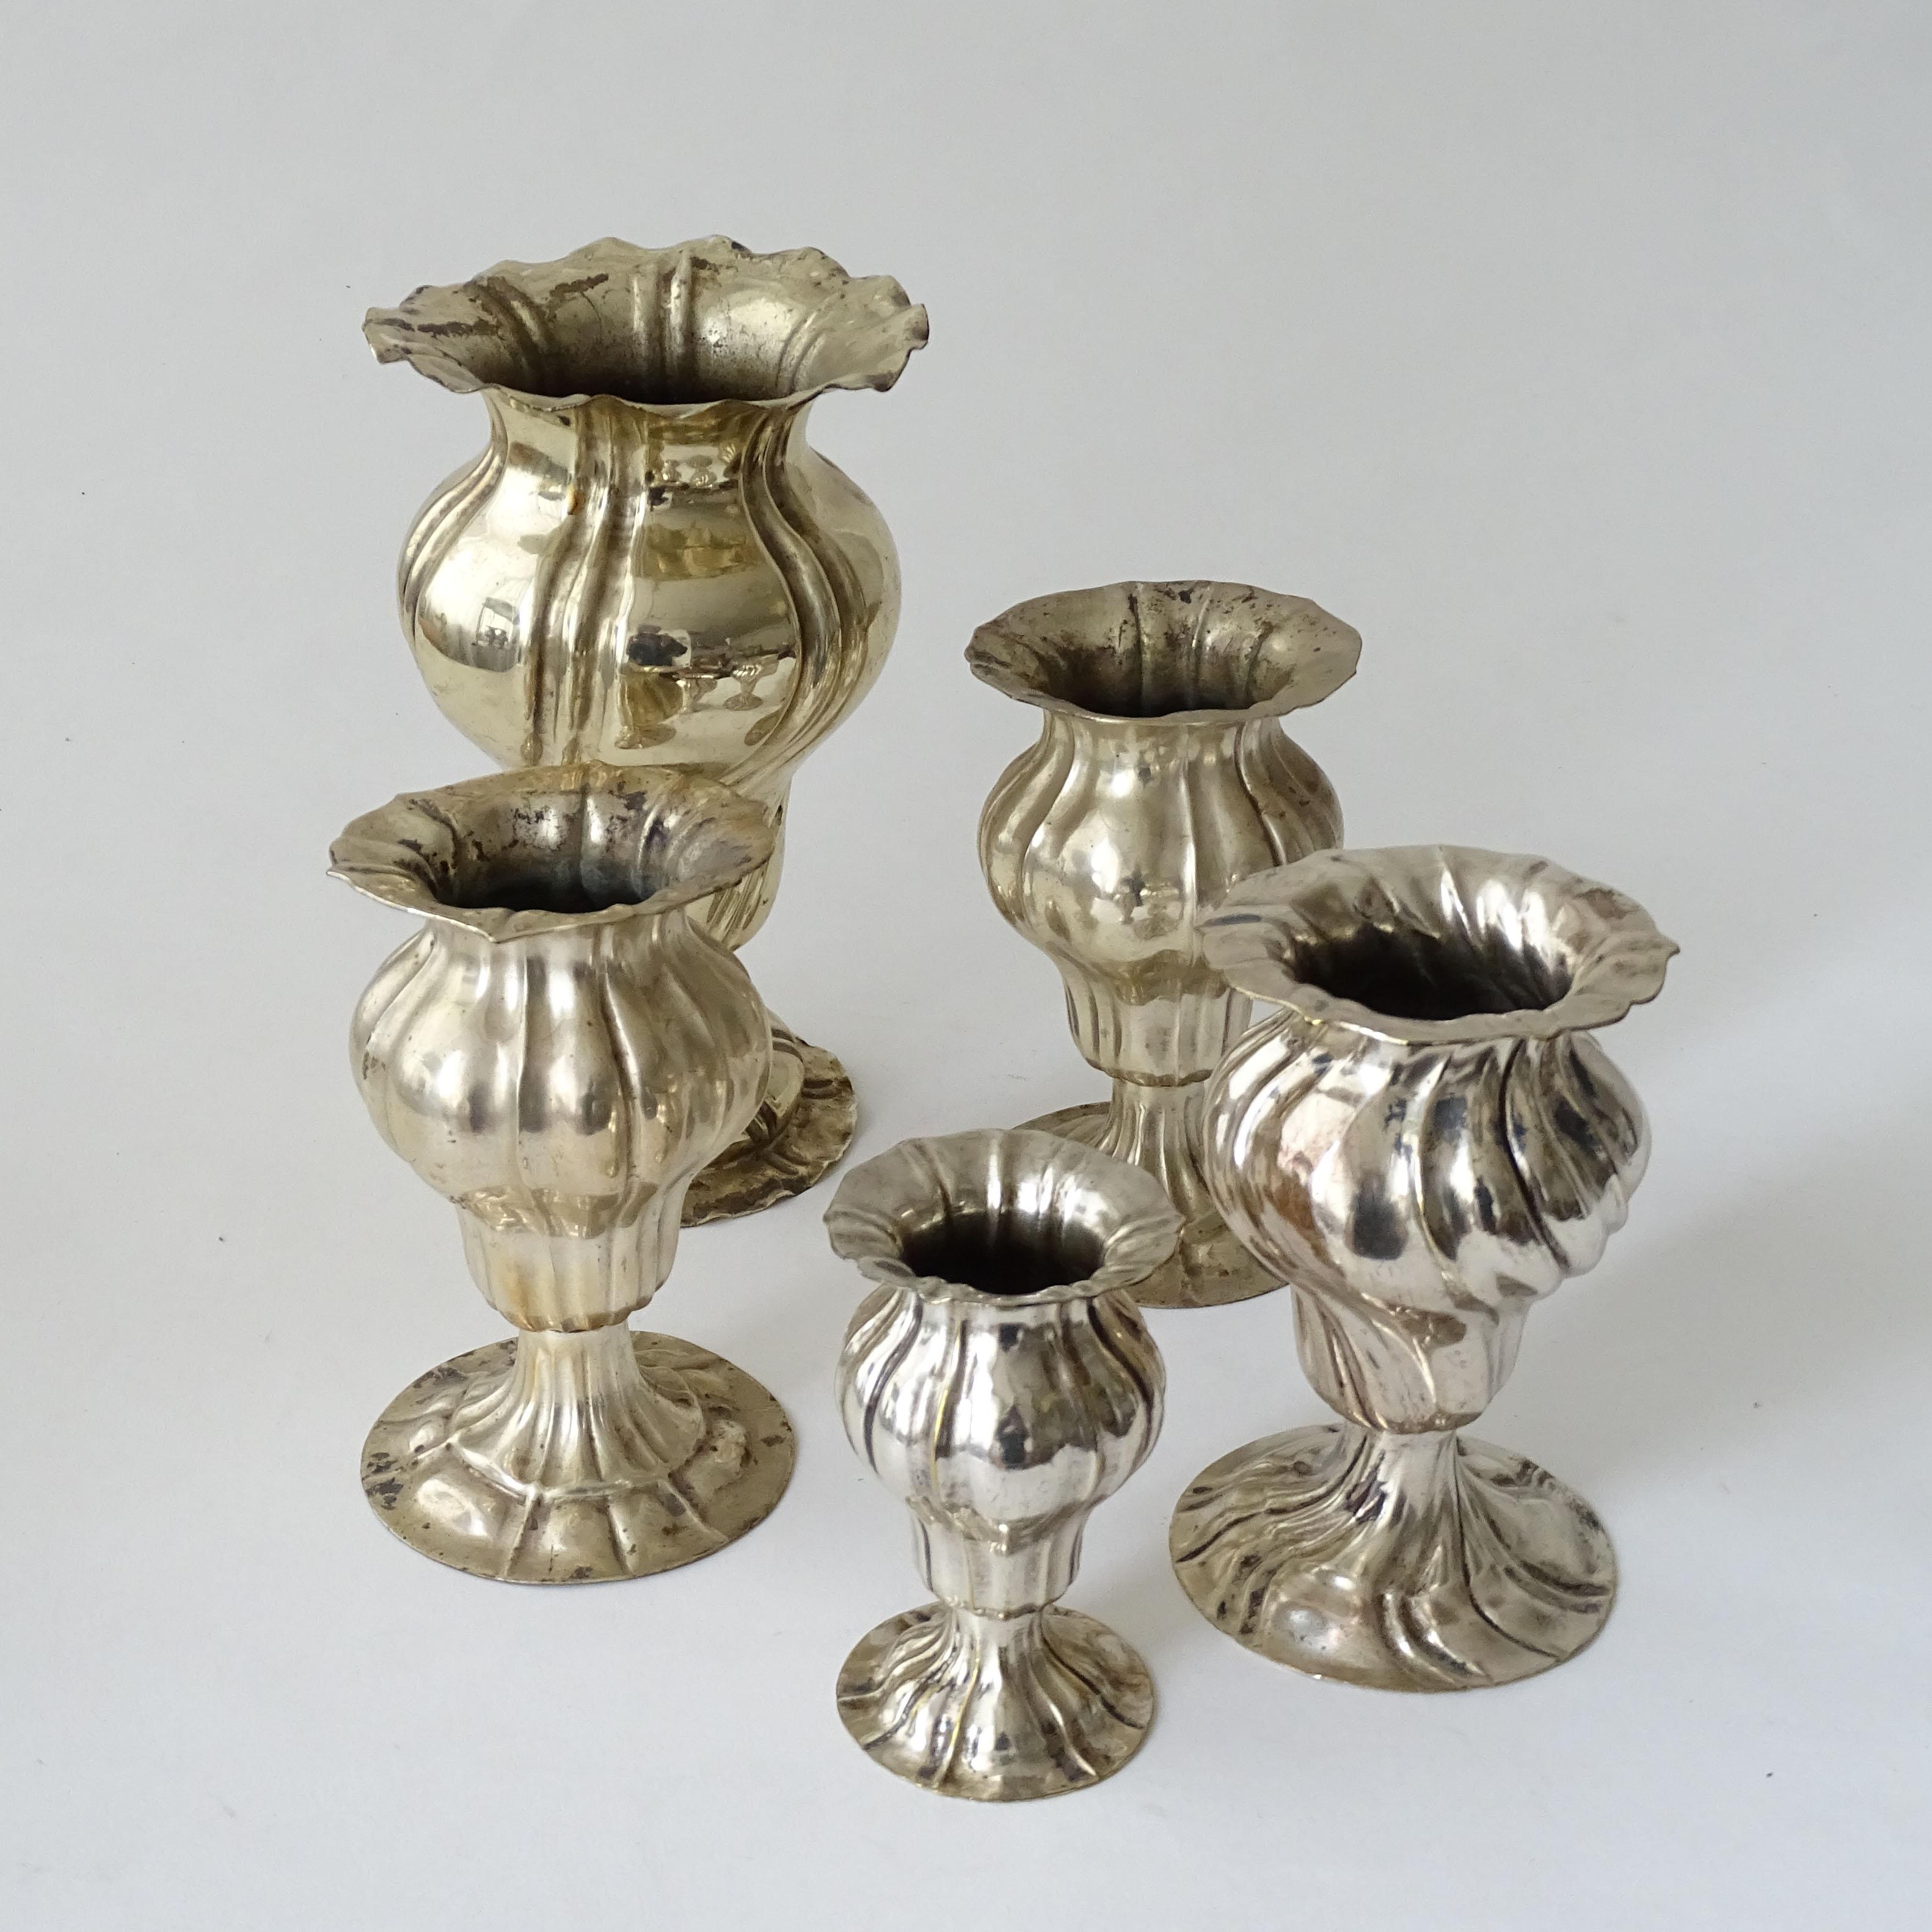 Cinq petits vases Soliflores anciens en métal argenté, Italie, années 1920
Pour une belle décoration florale de la table à manger.